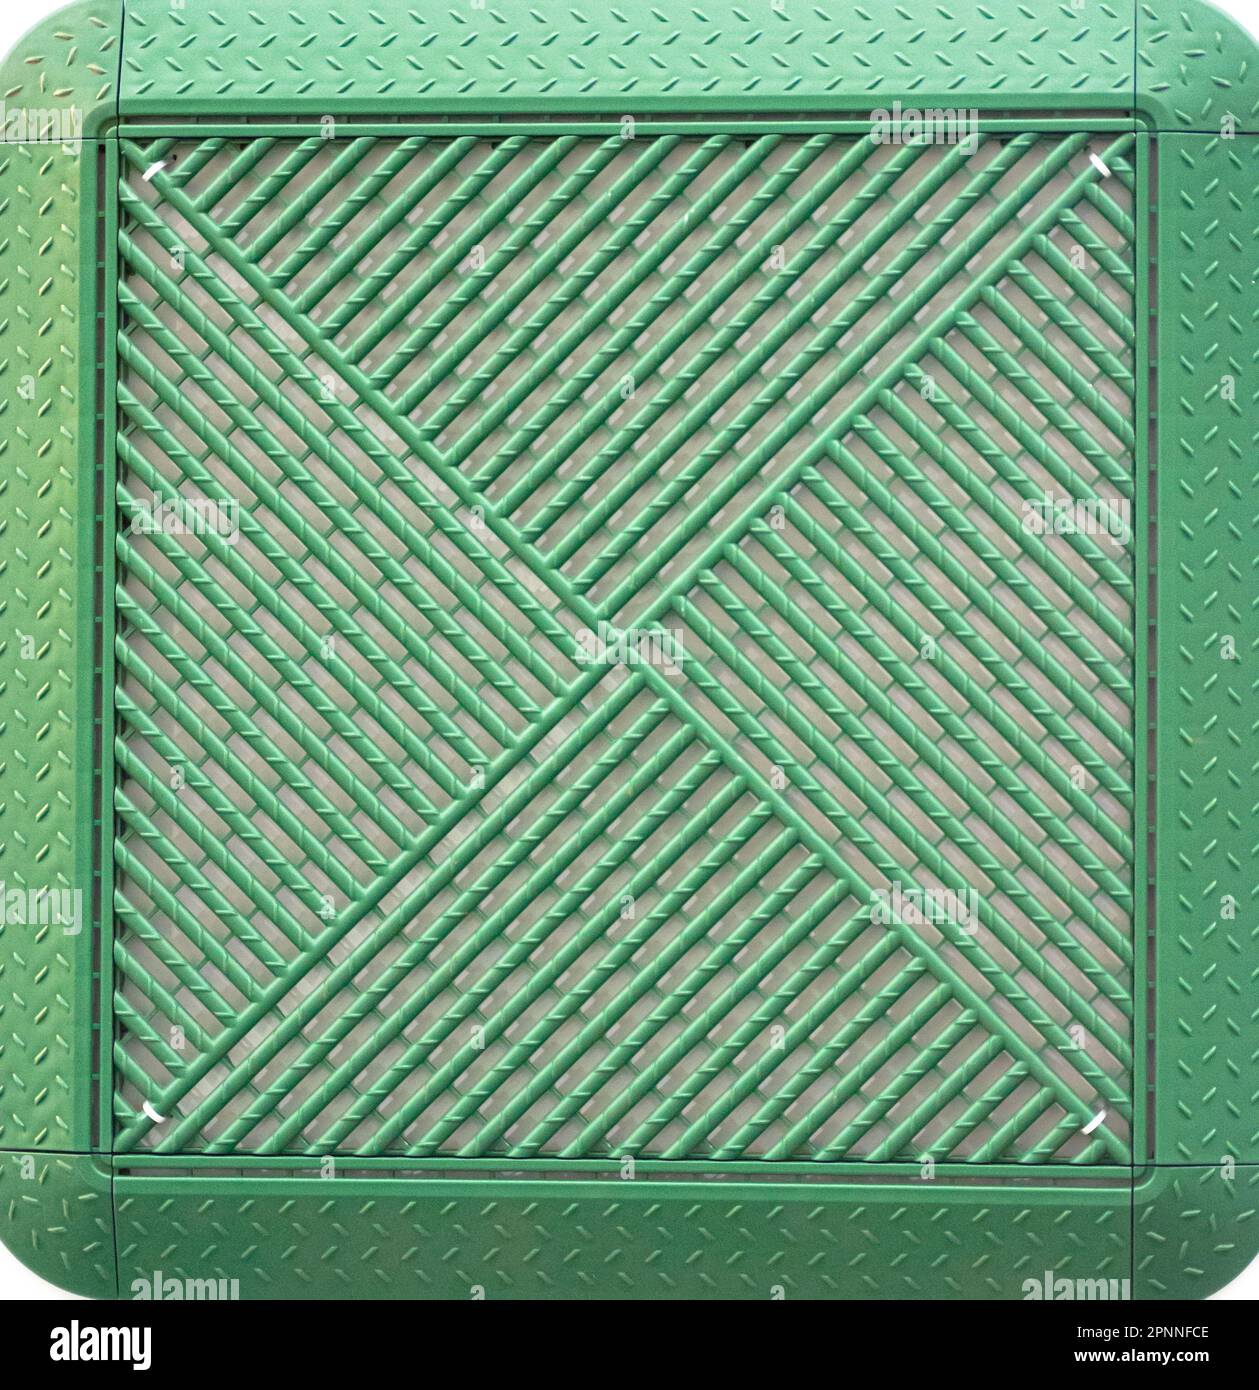 Square green plastic lawn grate. Stock Photo